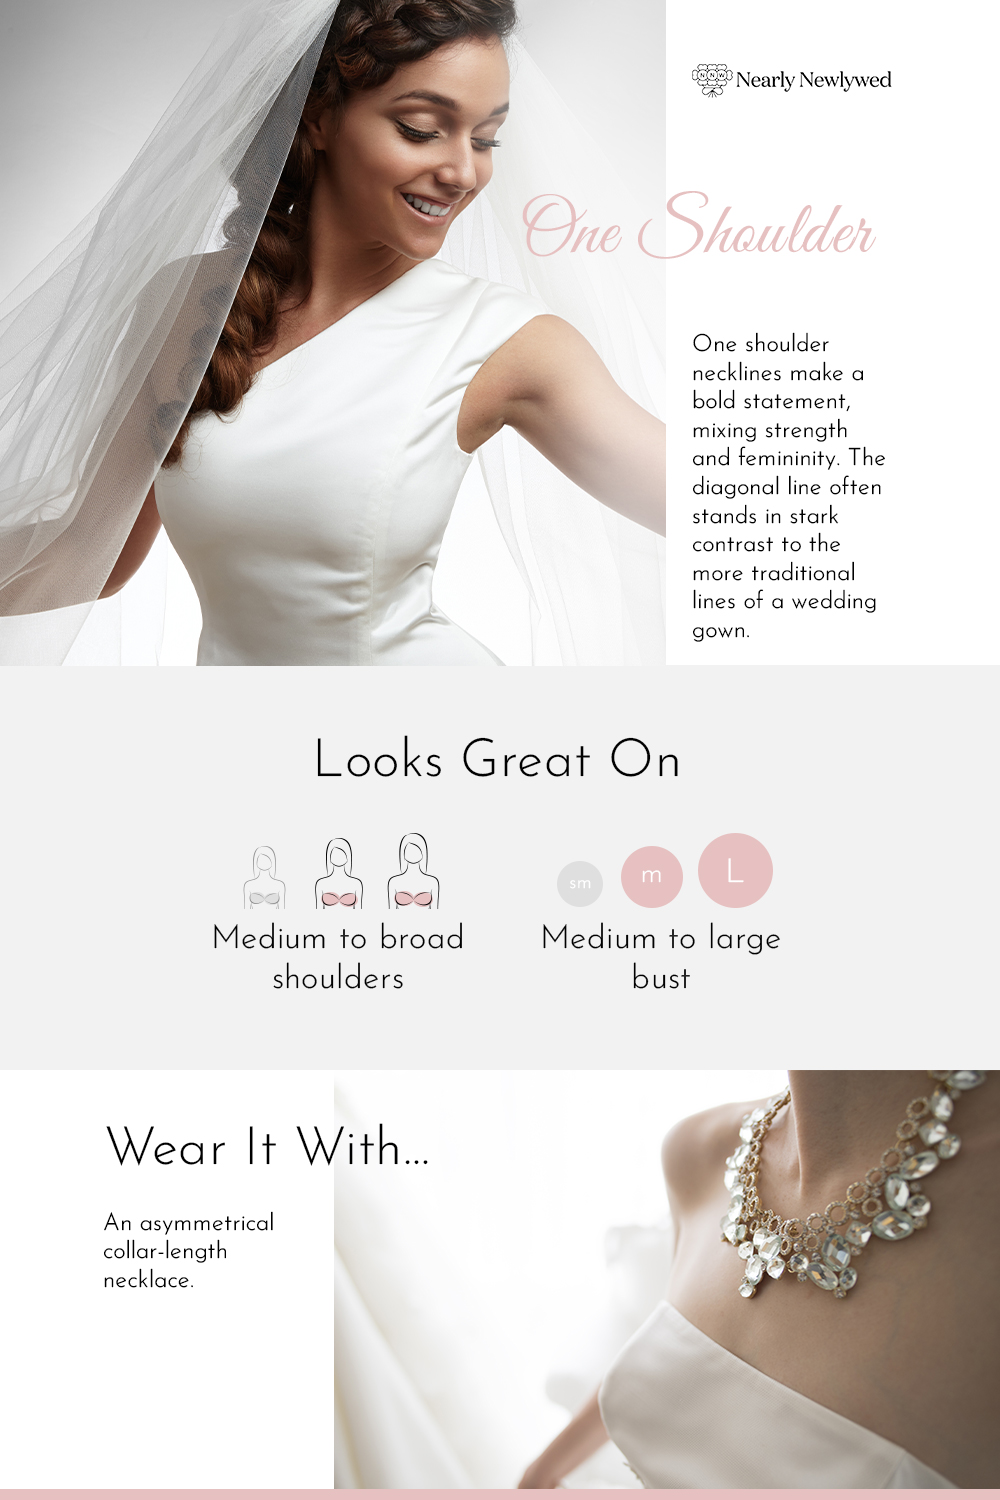 One Shoulder Wedding Dress Neckline Infographic